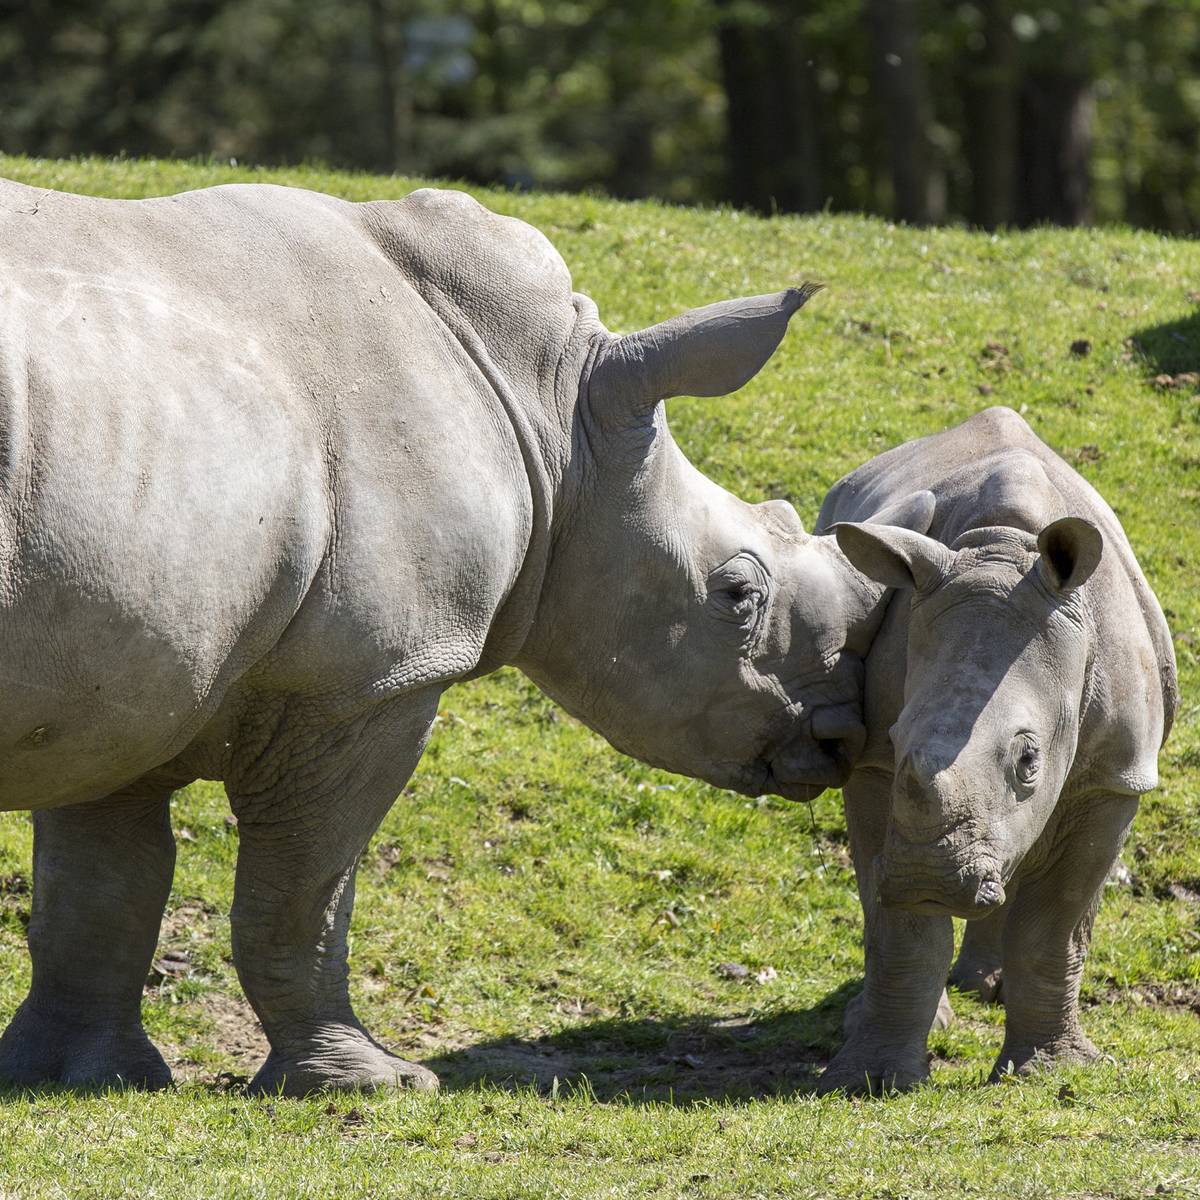 Protéger les rhinocéros du braconnage - Programme Namibie - Association Beauval Nature